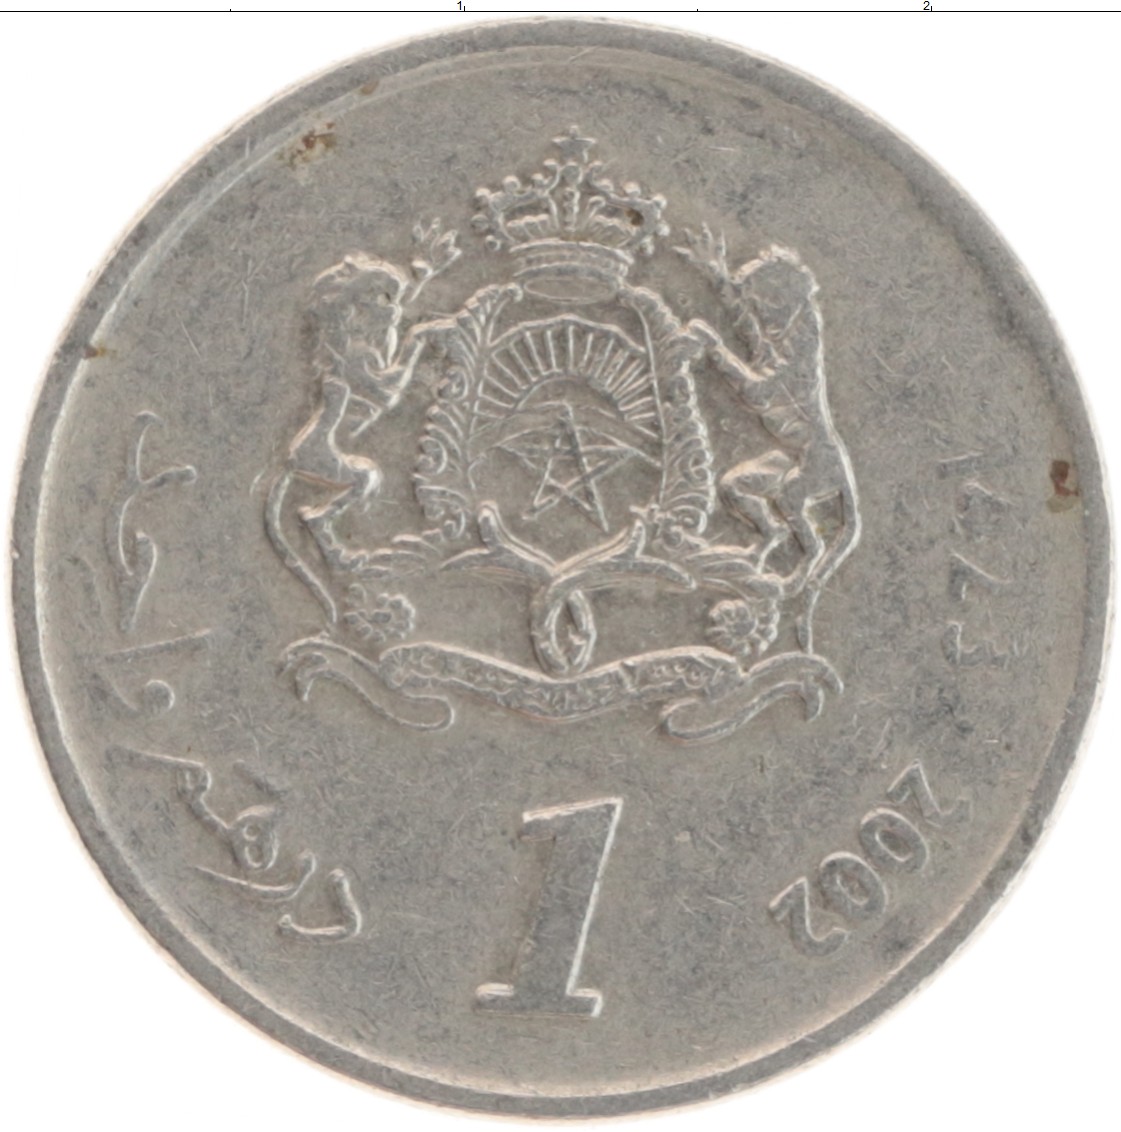 550 дирхам. 10 Дирхам монета. 1 Дирхам монета. 100 Дирхам монета. Монета Марокко 2002.